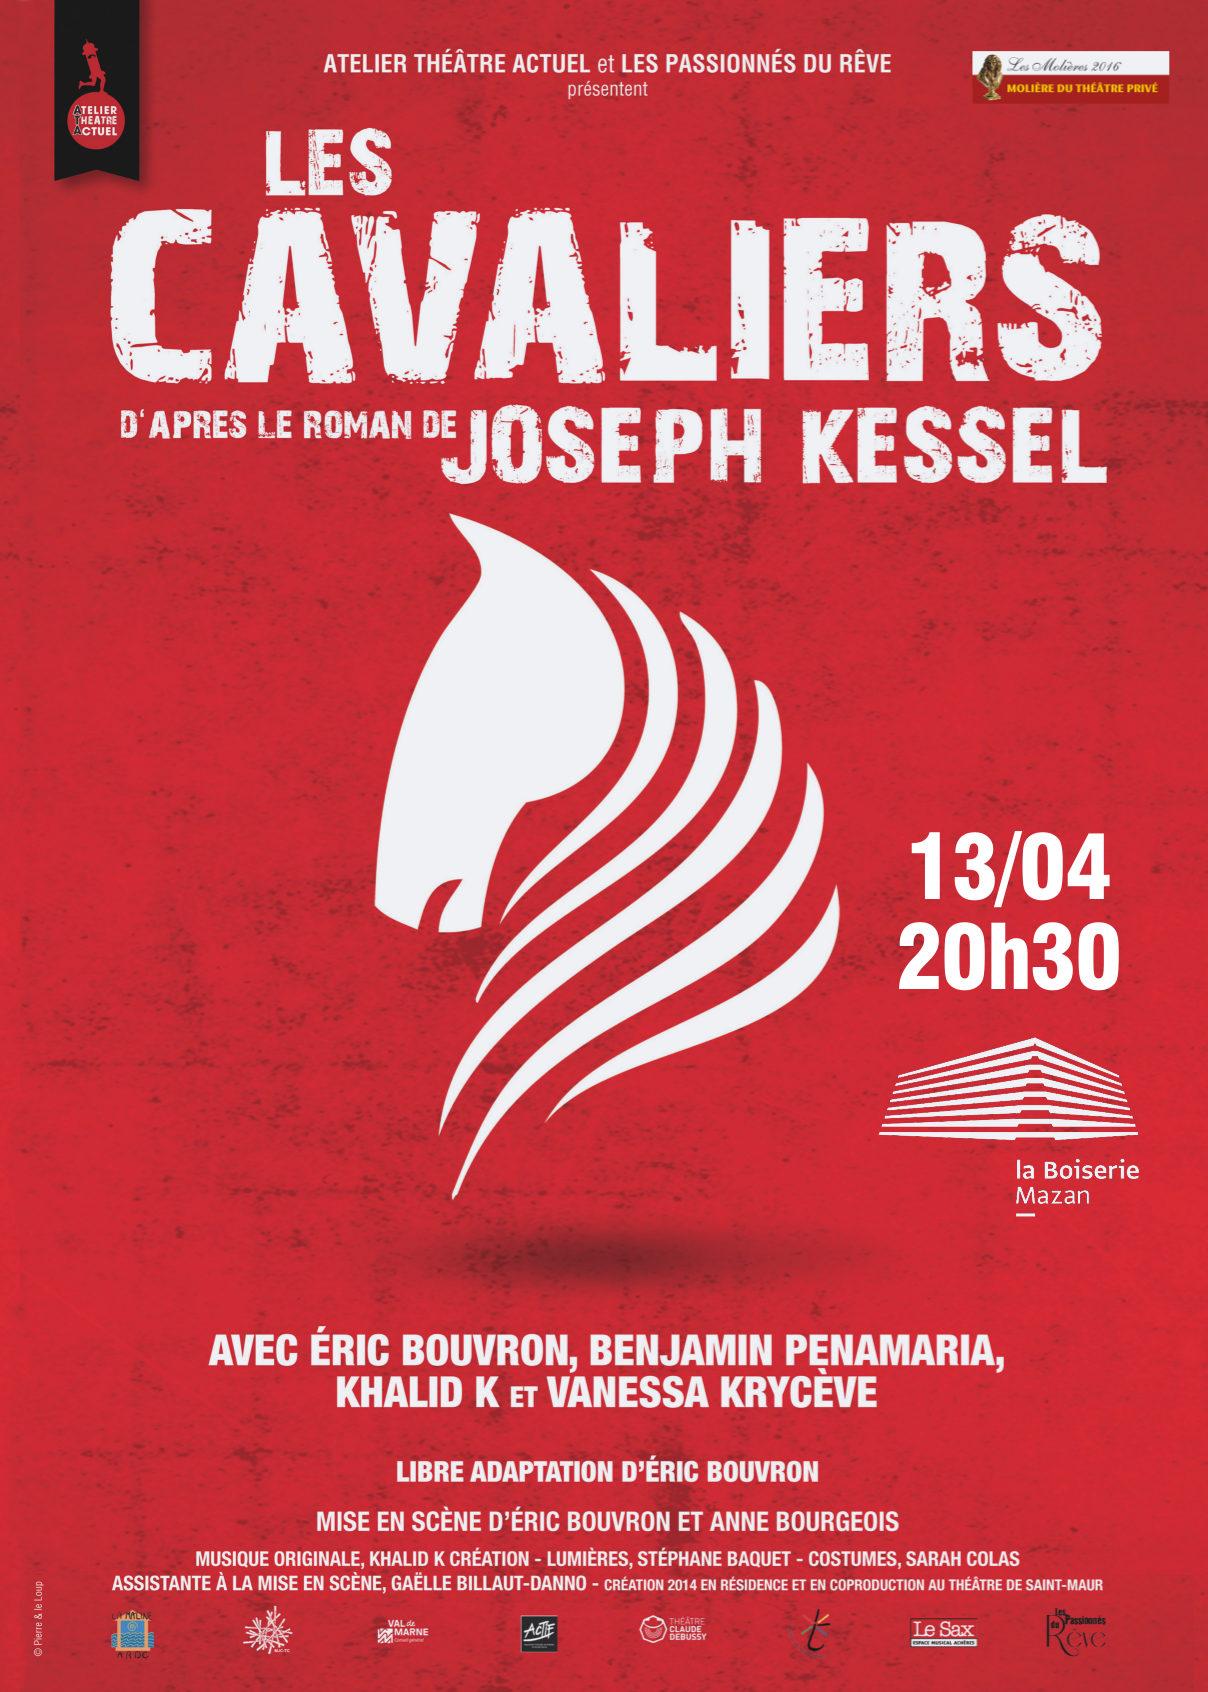 Les Cavaliers - texte adapté du roman de Joseph Kessel